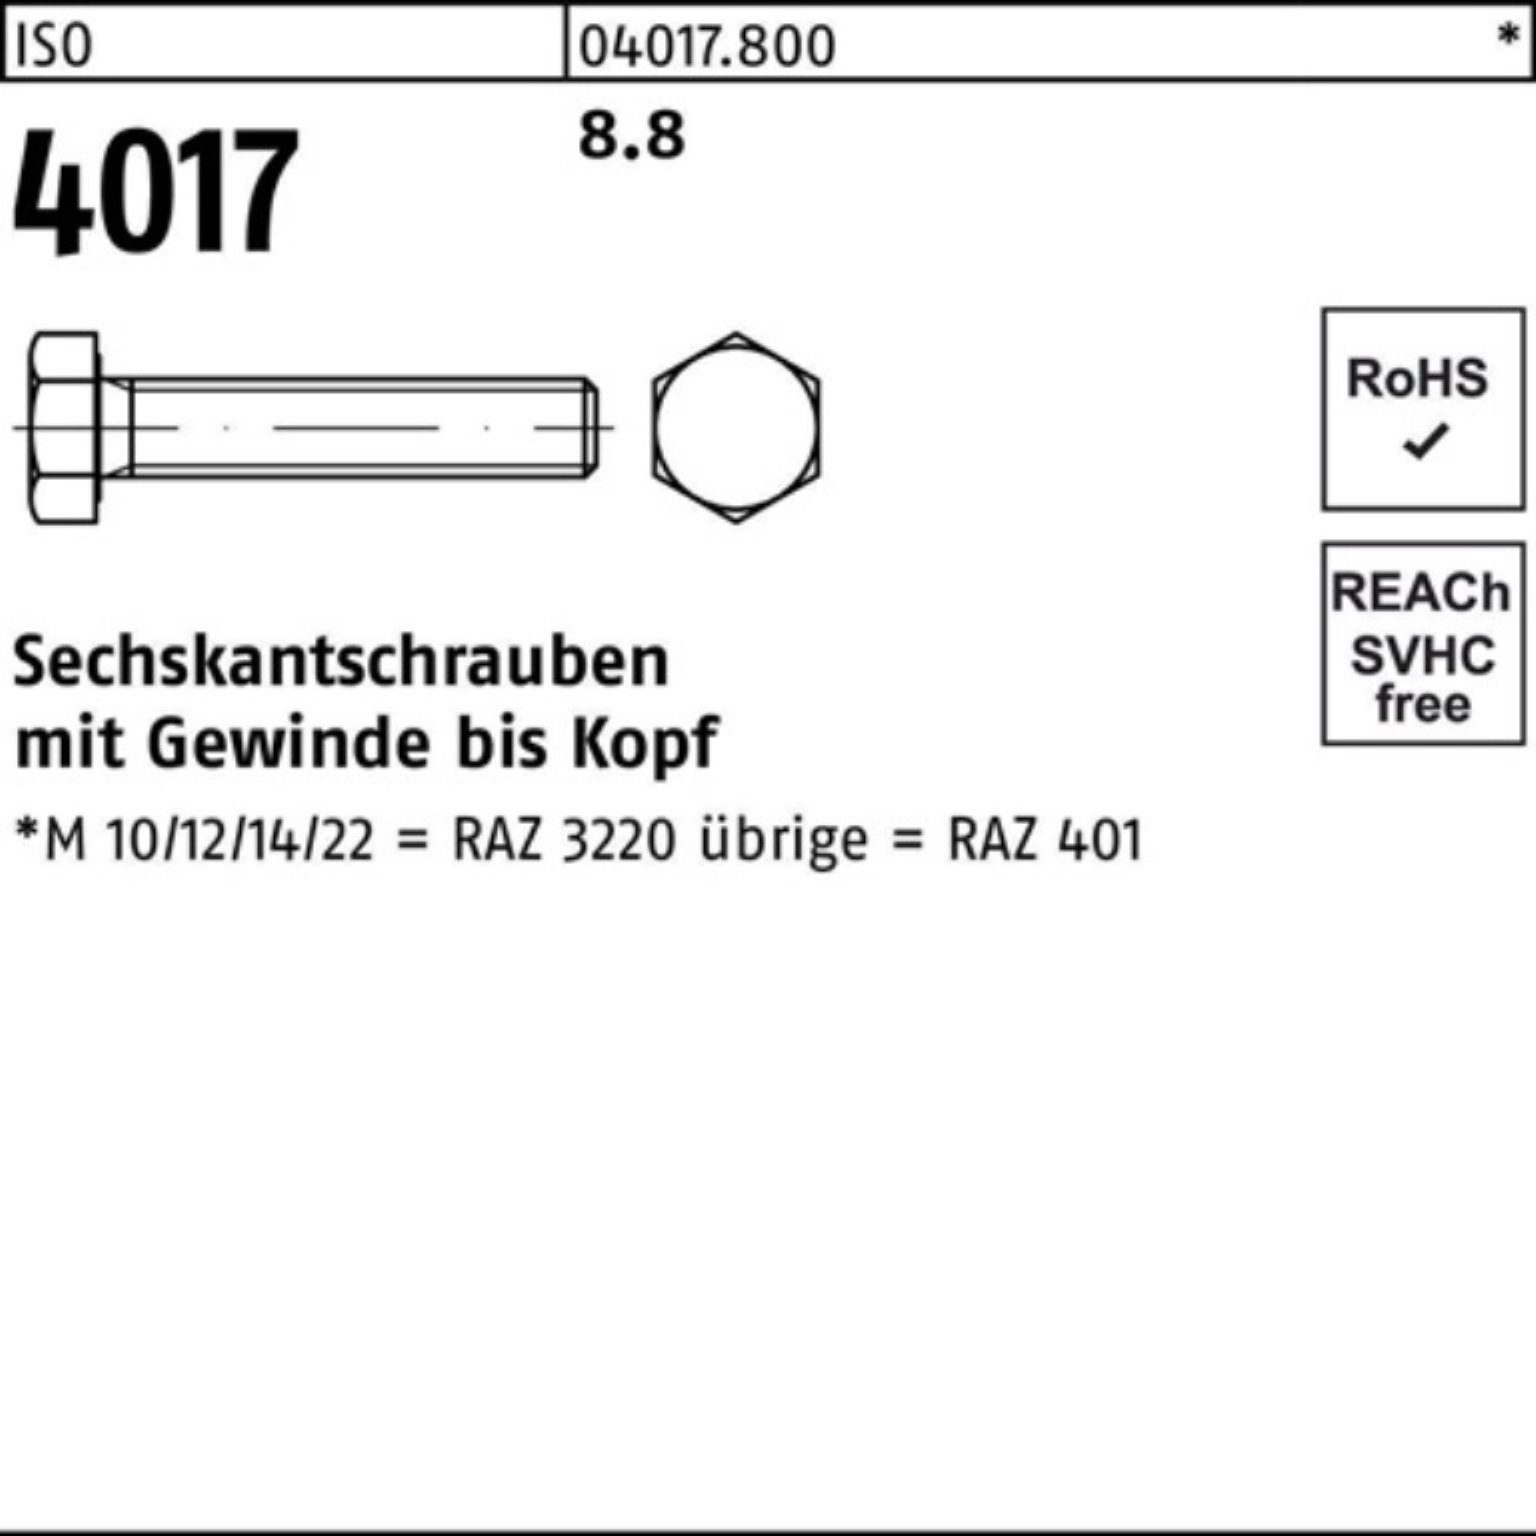 VG Stück Sechskantschraube M6x Bufab Pack ISO 100er 401 100 8.8 20 ISO Sechskantschraube 4017